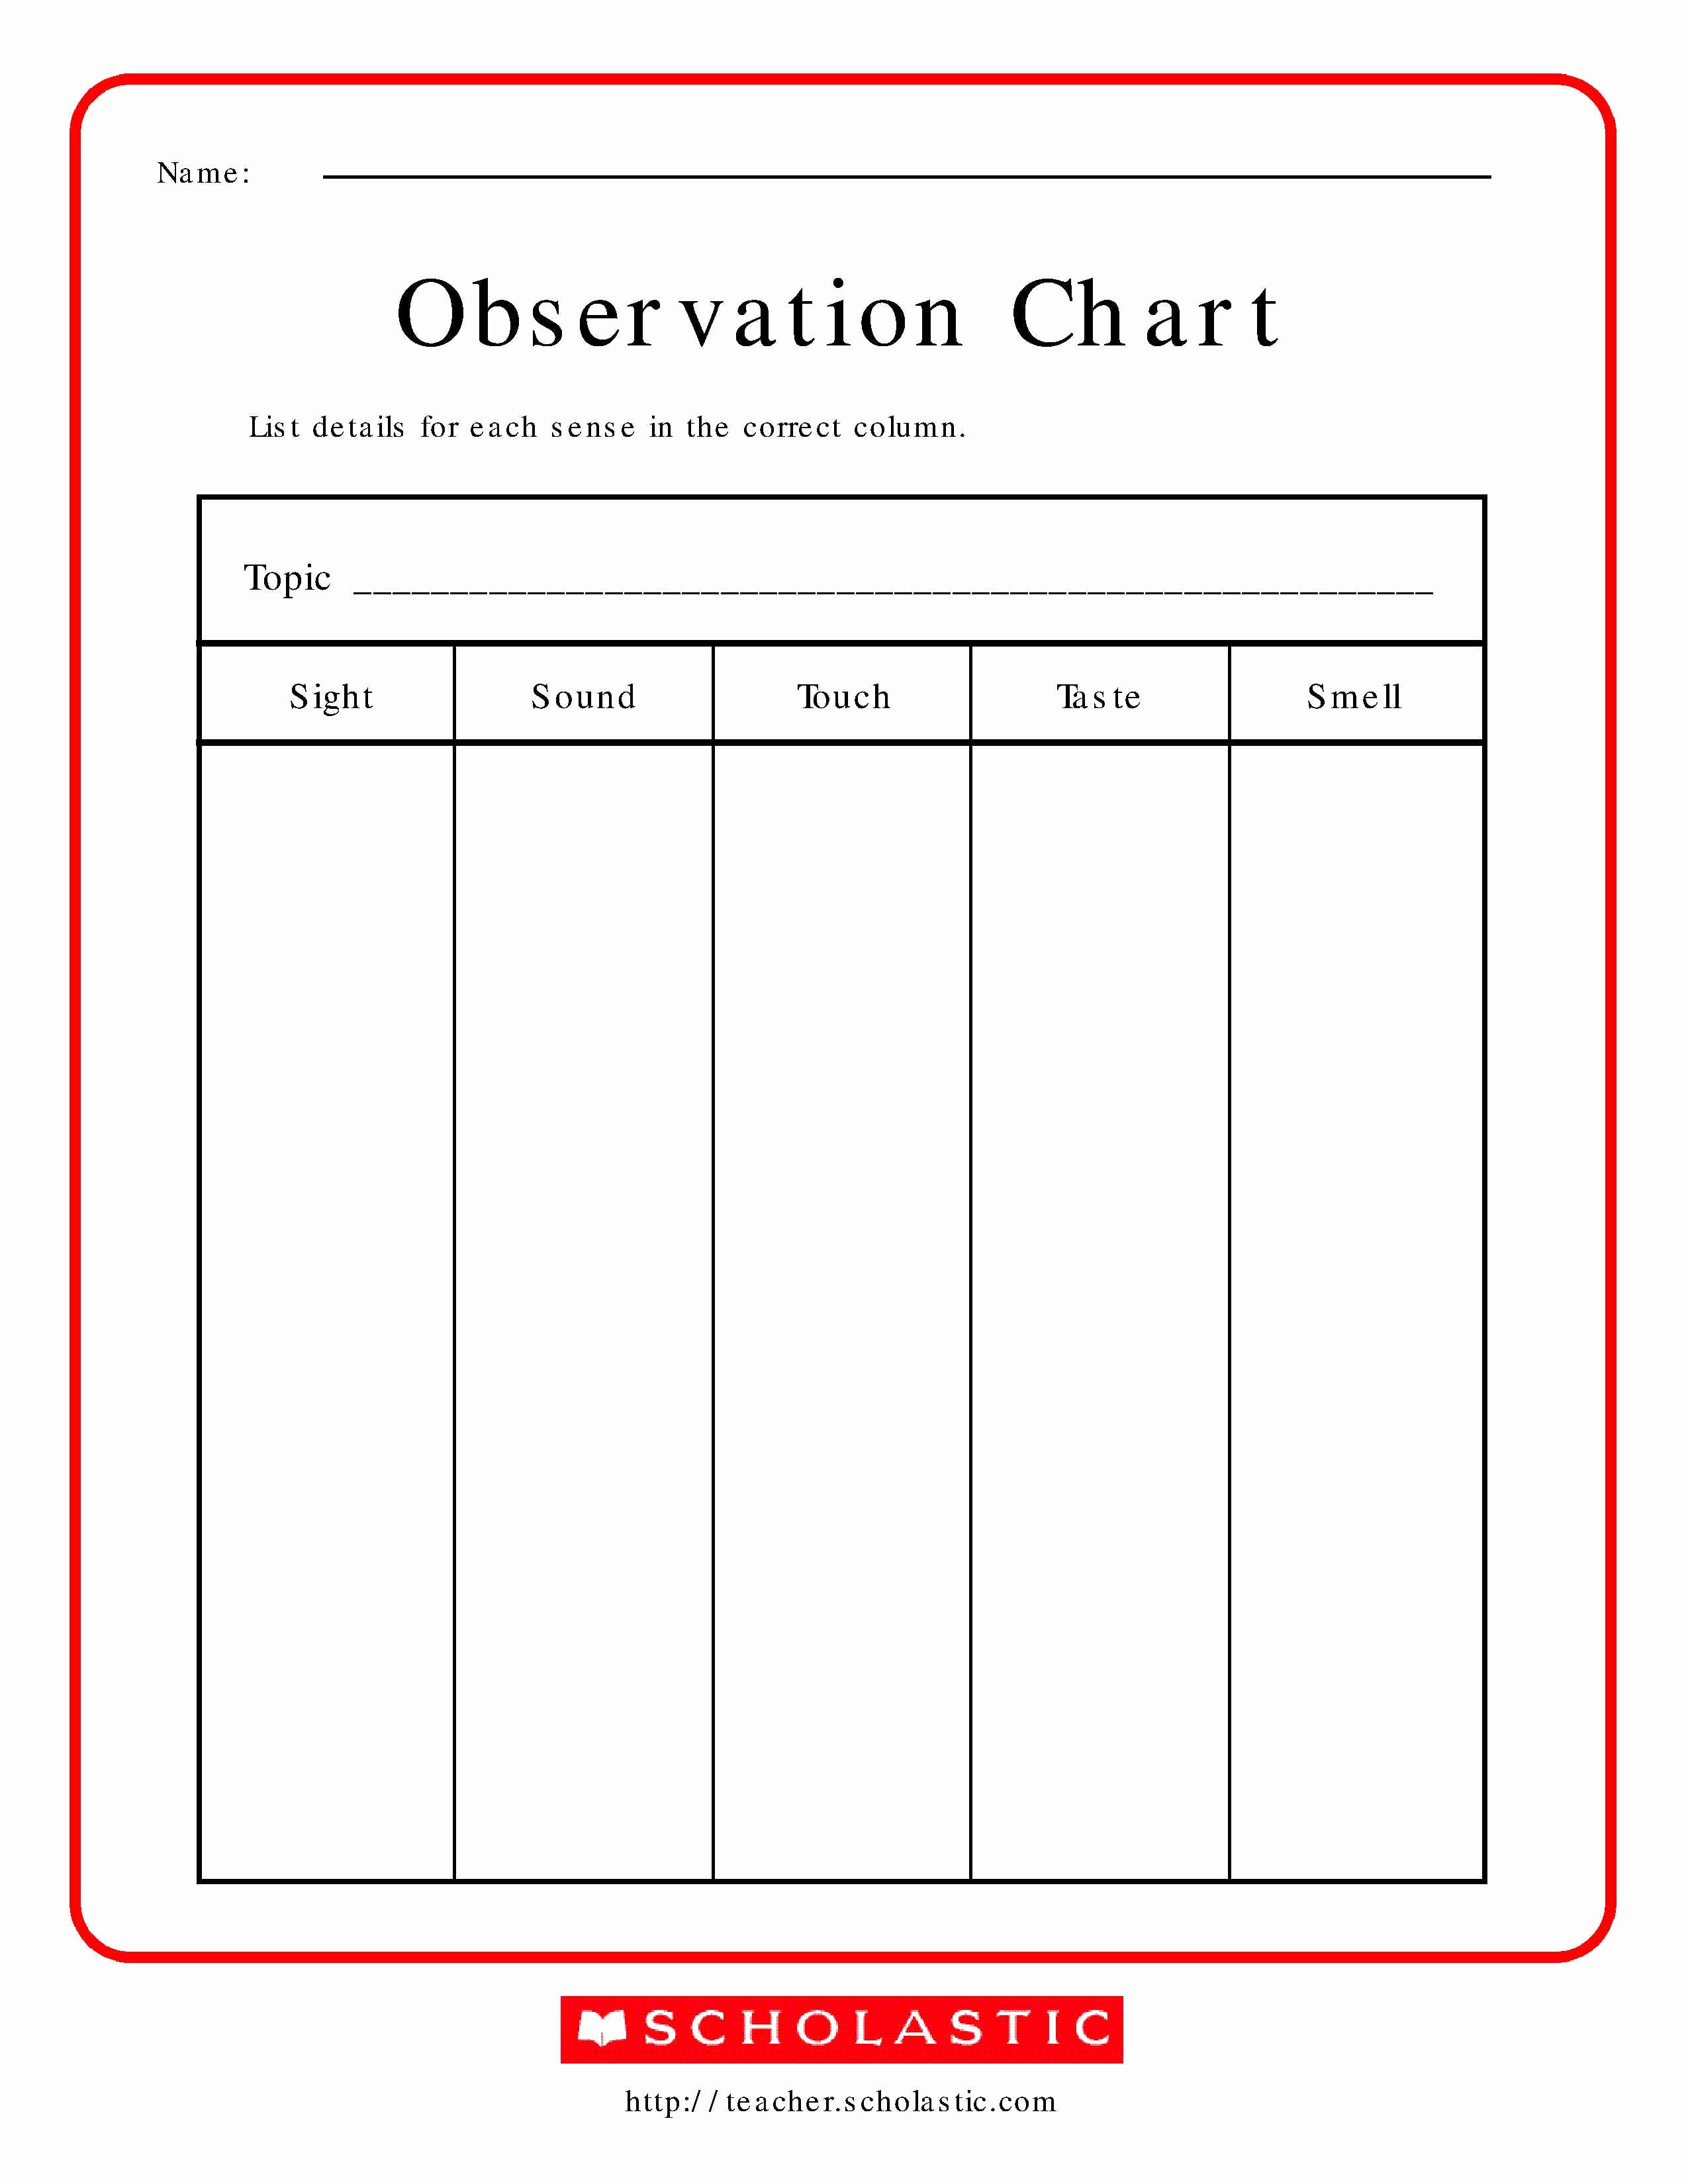 Preschool Teacher Observation form Template Best Of Best S Of Printable Observation forms for